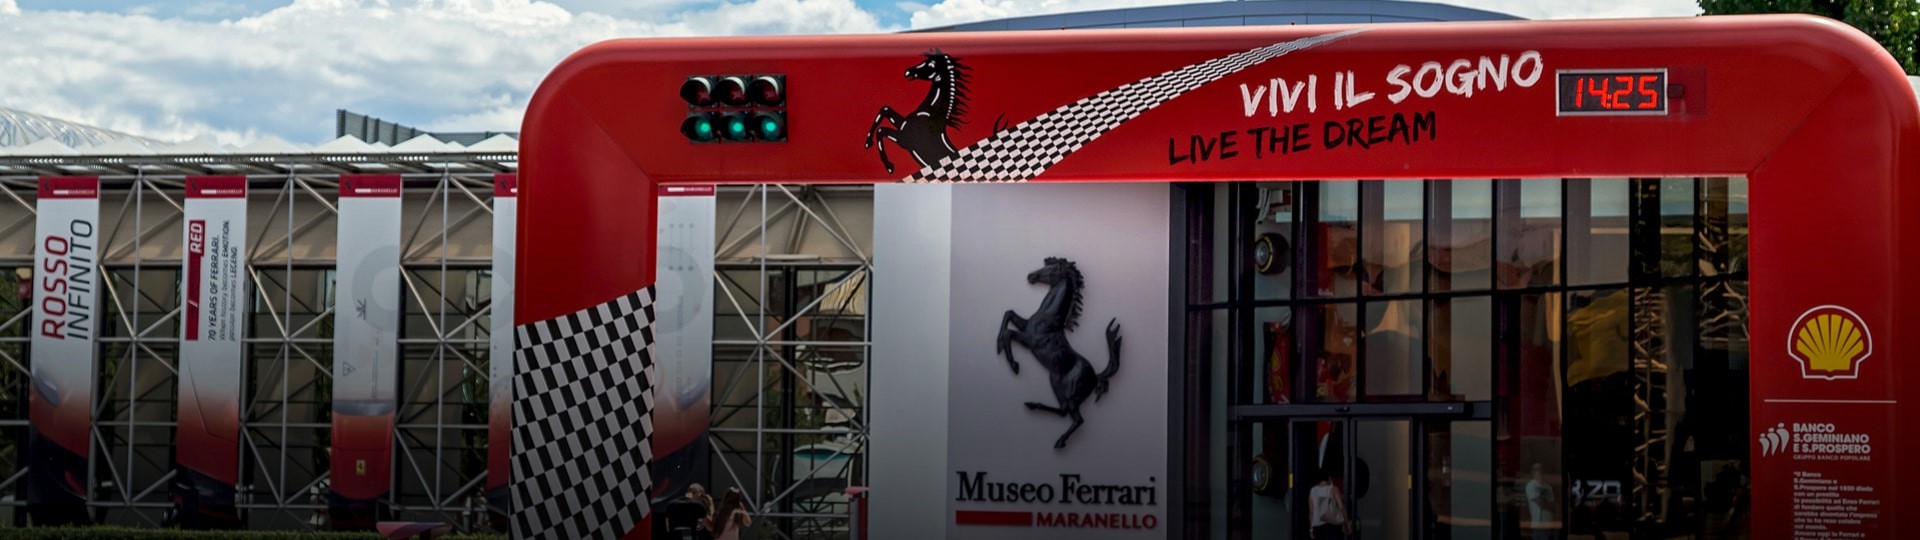 Automobilce Ferrari klesl kvůli pandemii zisk i tržby